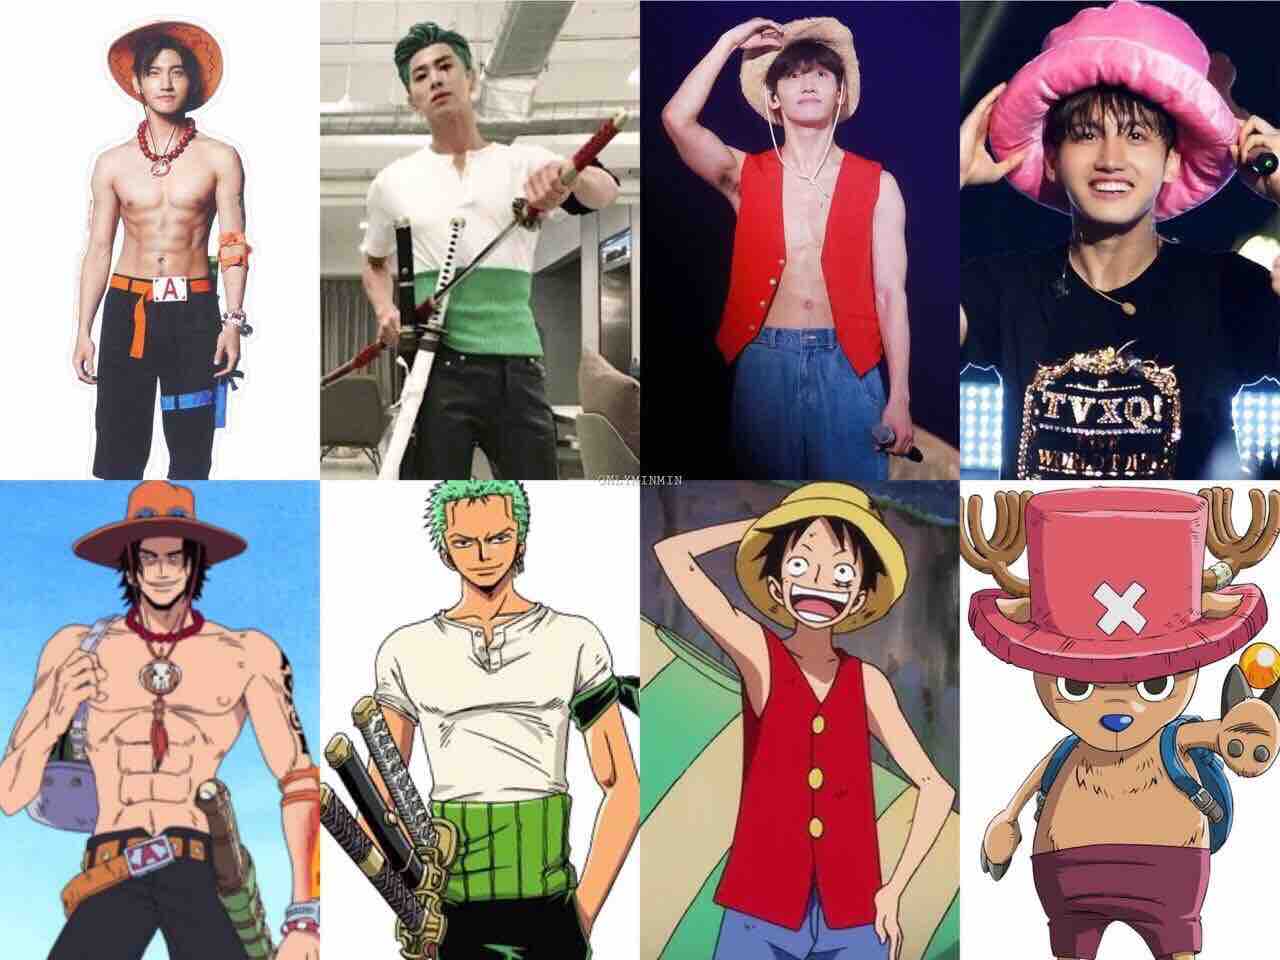 東方神起 One Piece コラボおめでとう まゆの自由時間